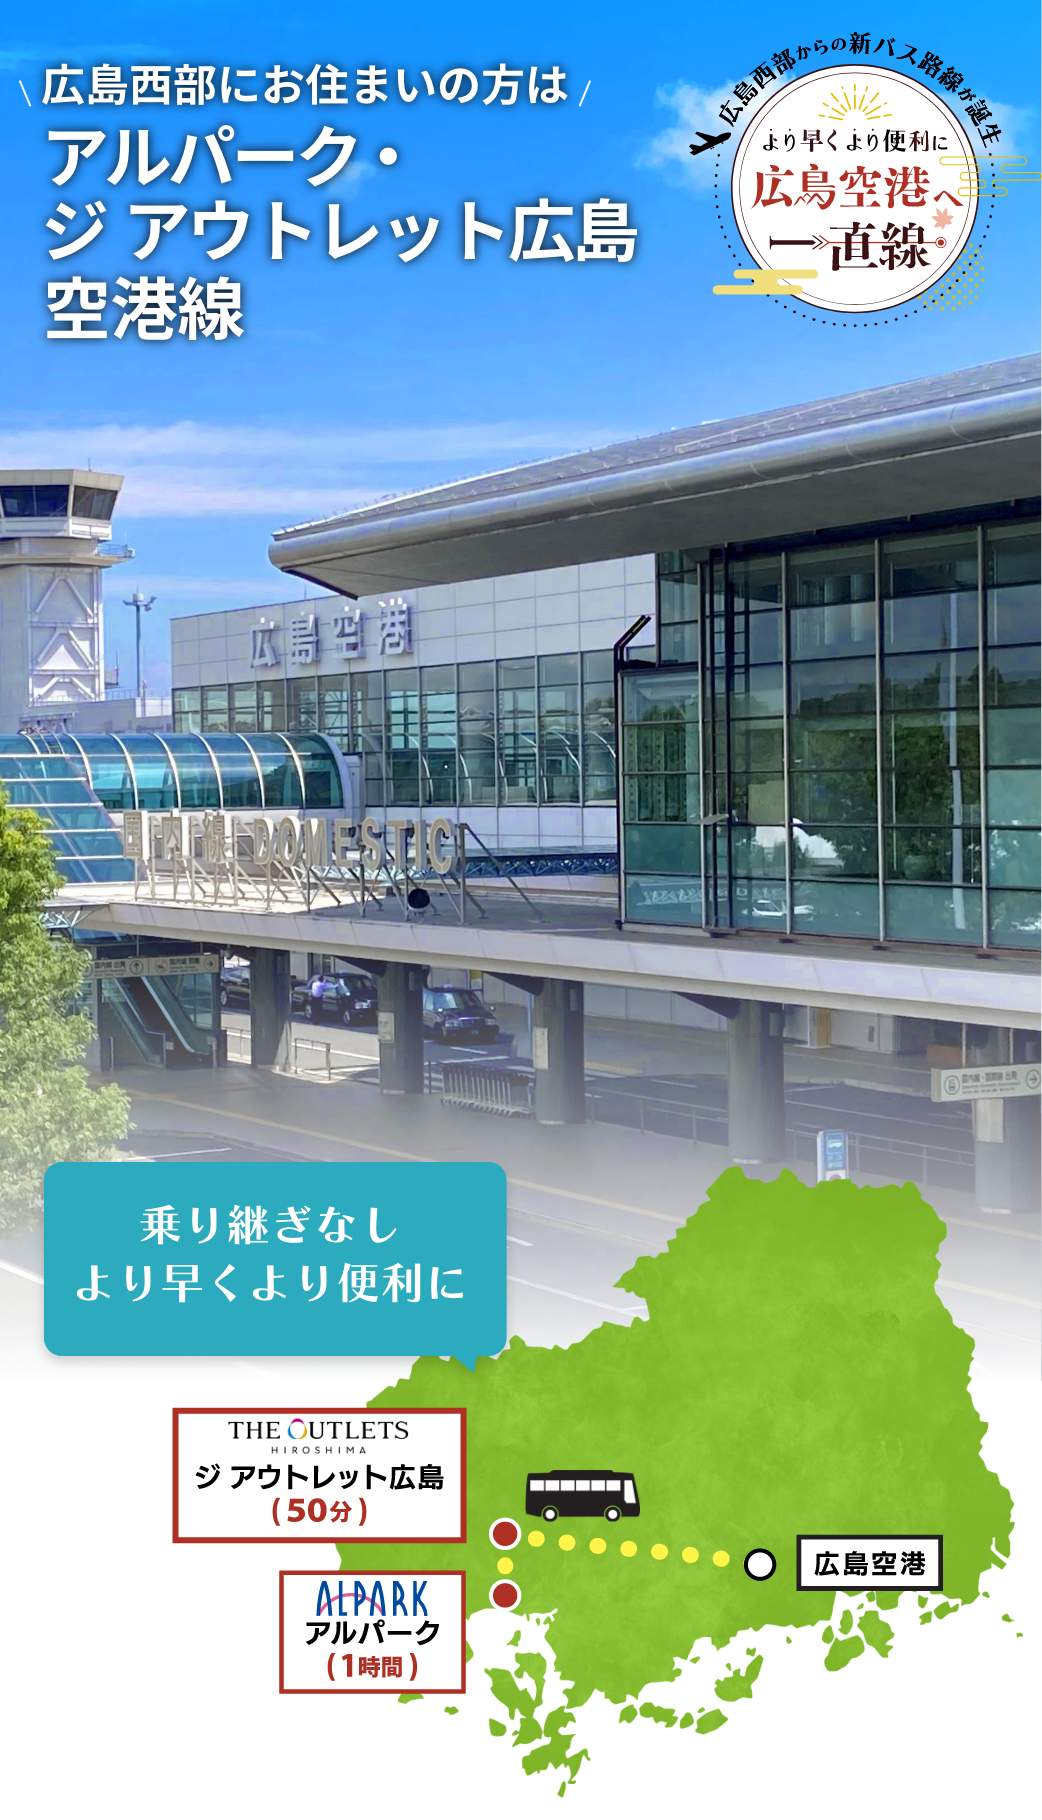 広島西部にお住まいの方は、アルパーク・ジ アウトレット広島空港線